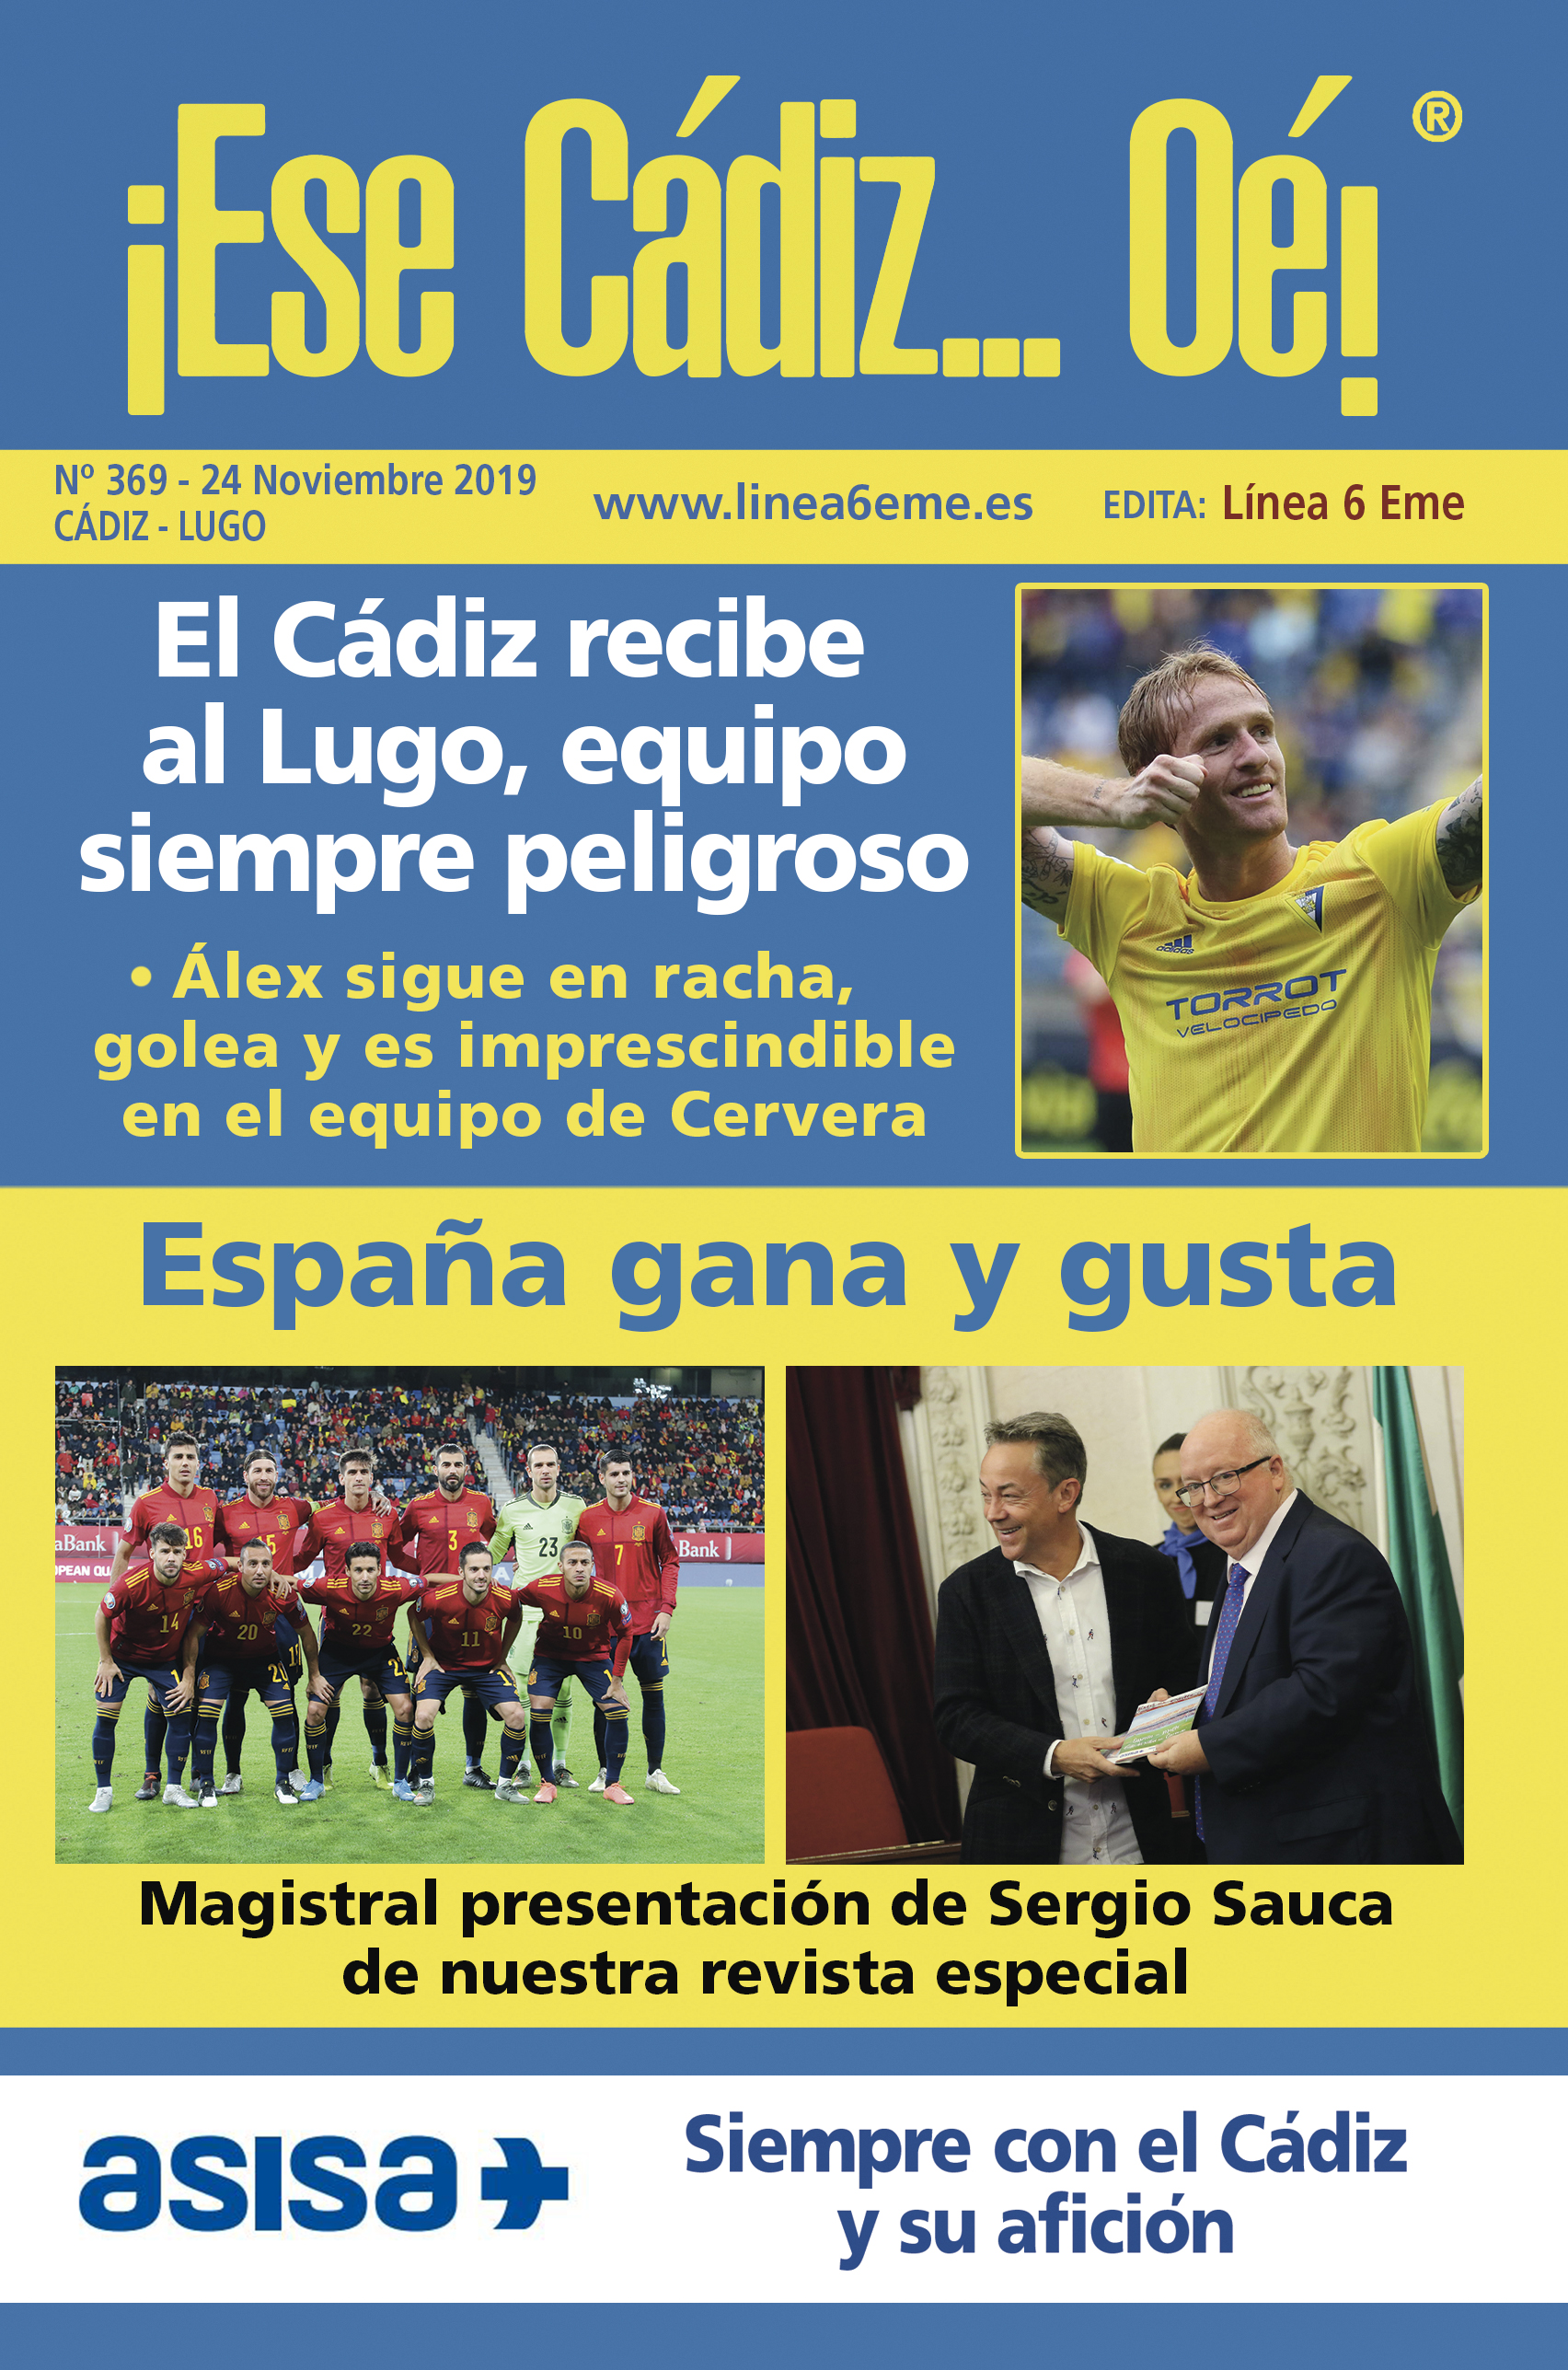 ¡Ese Cádiz…Oé! núm. 369 Temporada 2019/20